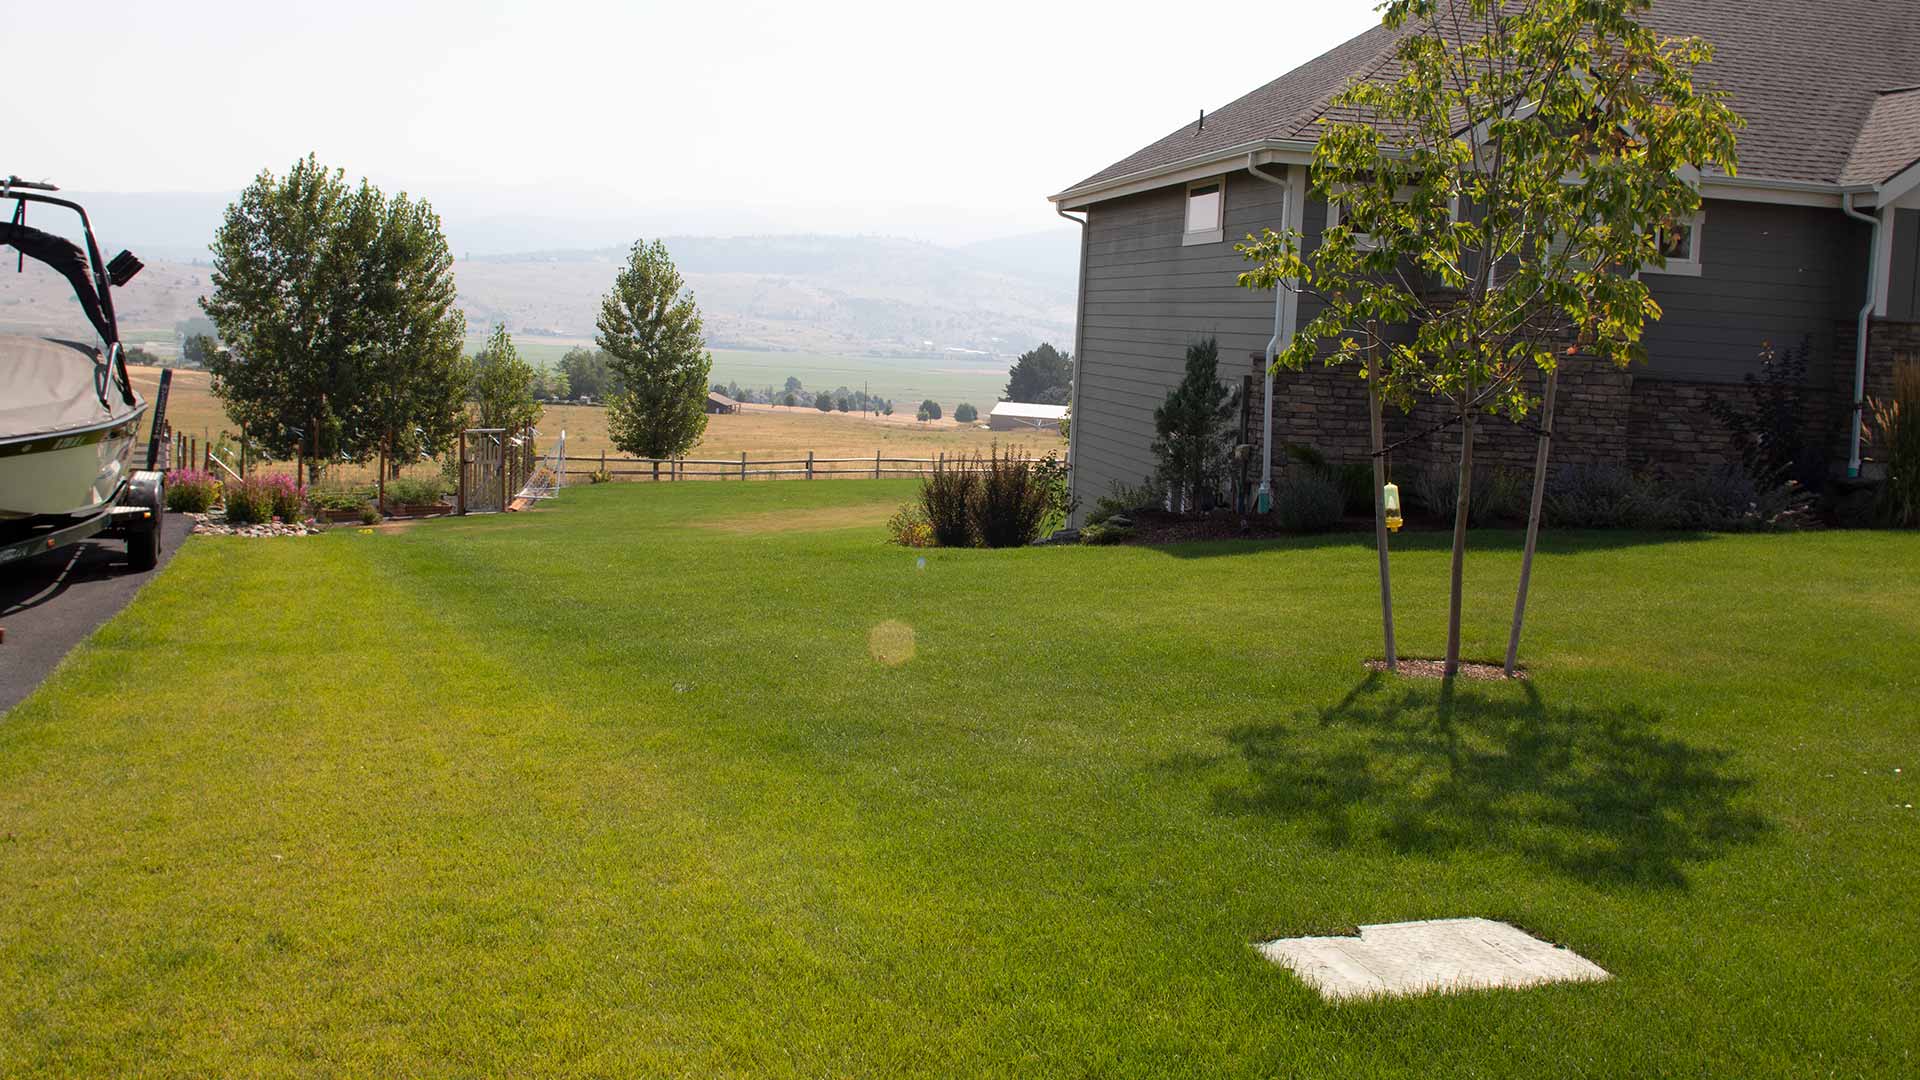 Well fertilized lawn at a home in Spokane, WA.